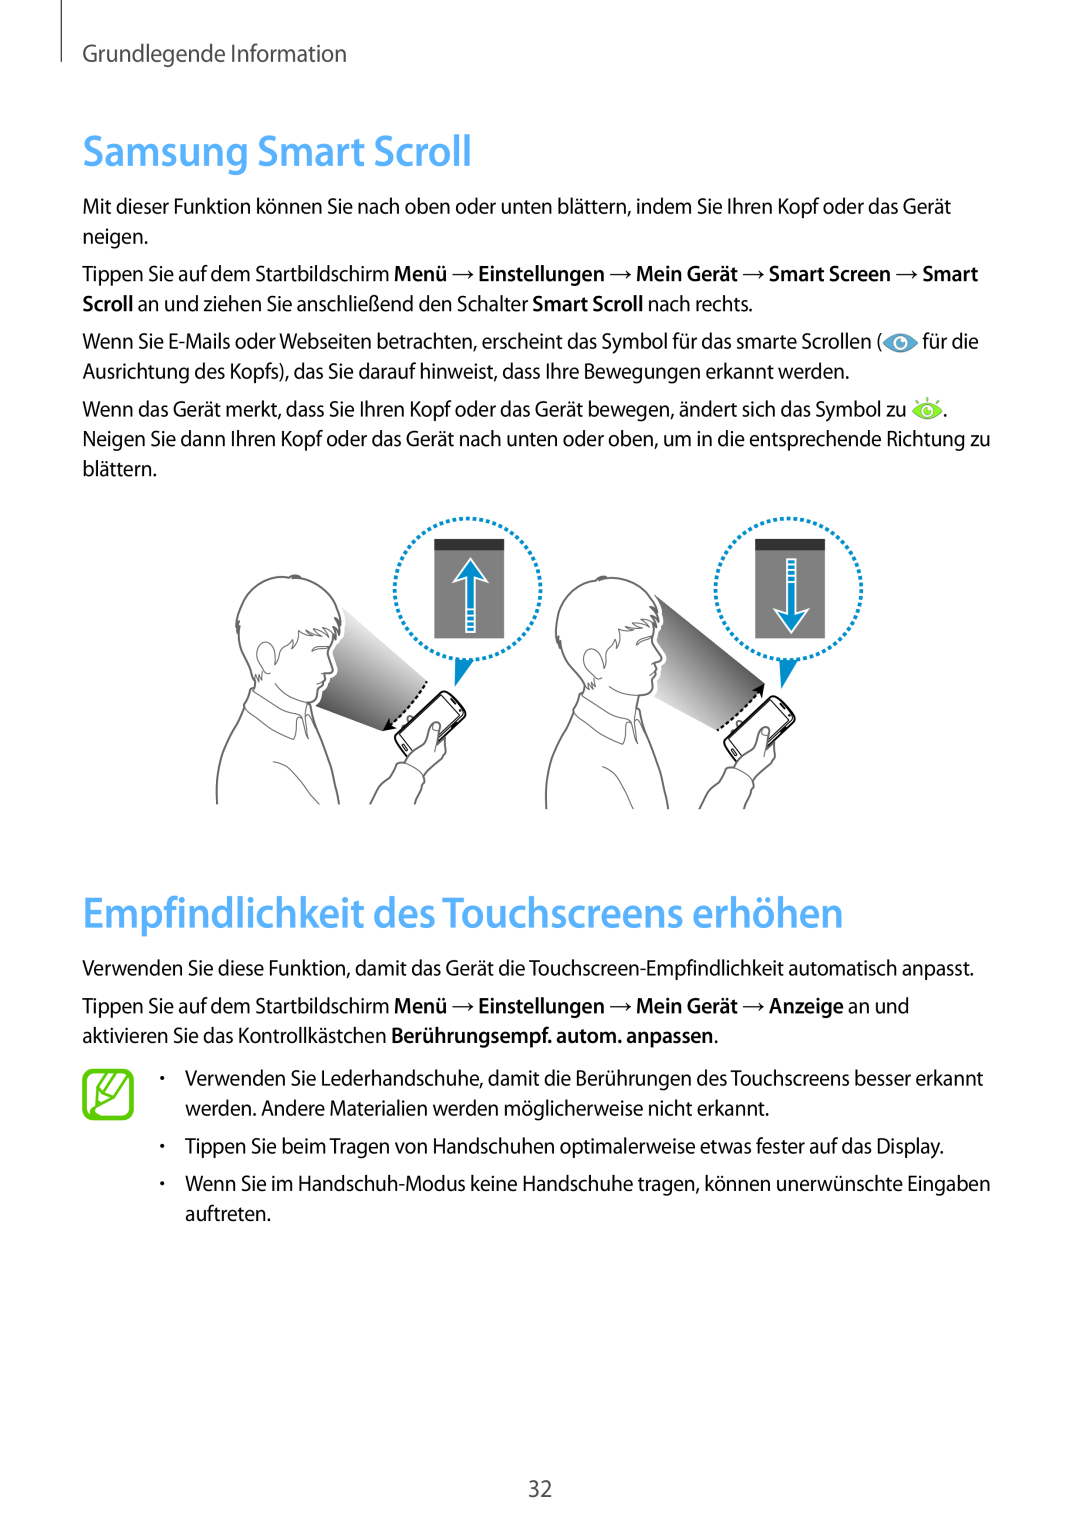 Samsung GT-I9505ZWATPH manual Samsung Smart Scroll, Empfindlichkeit des Touchscreens erhöhen, Grundlegende Information 